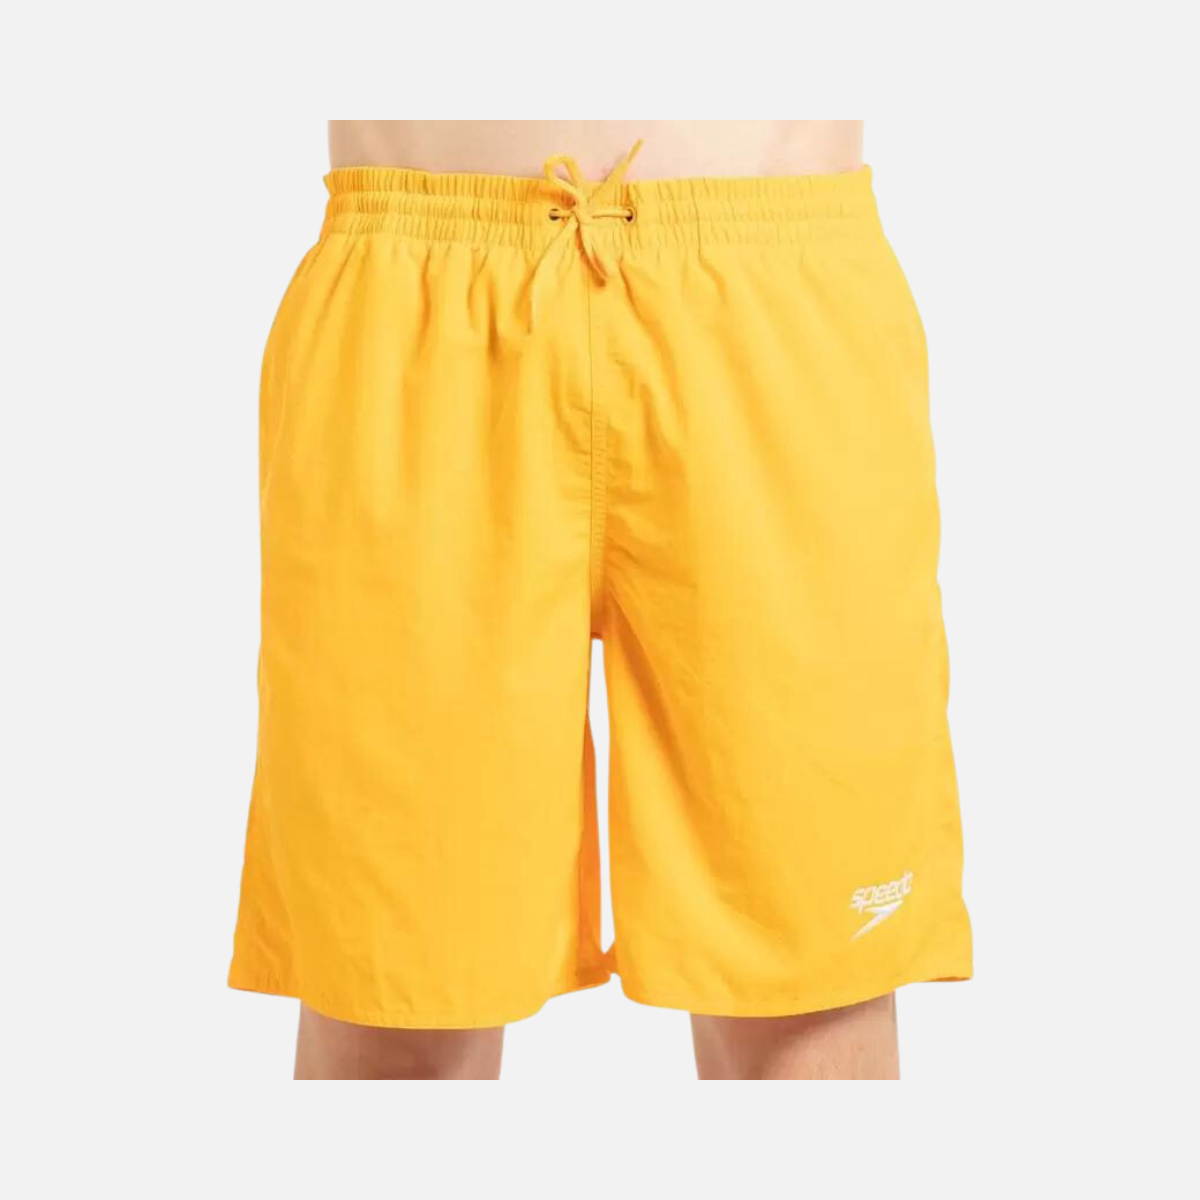 Speedo Am Essential 18 Men's Water Shorts -Mango/White